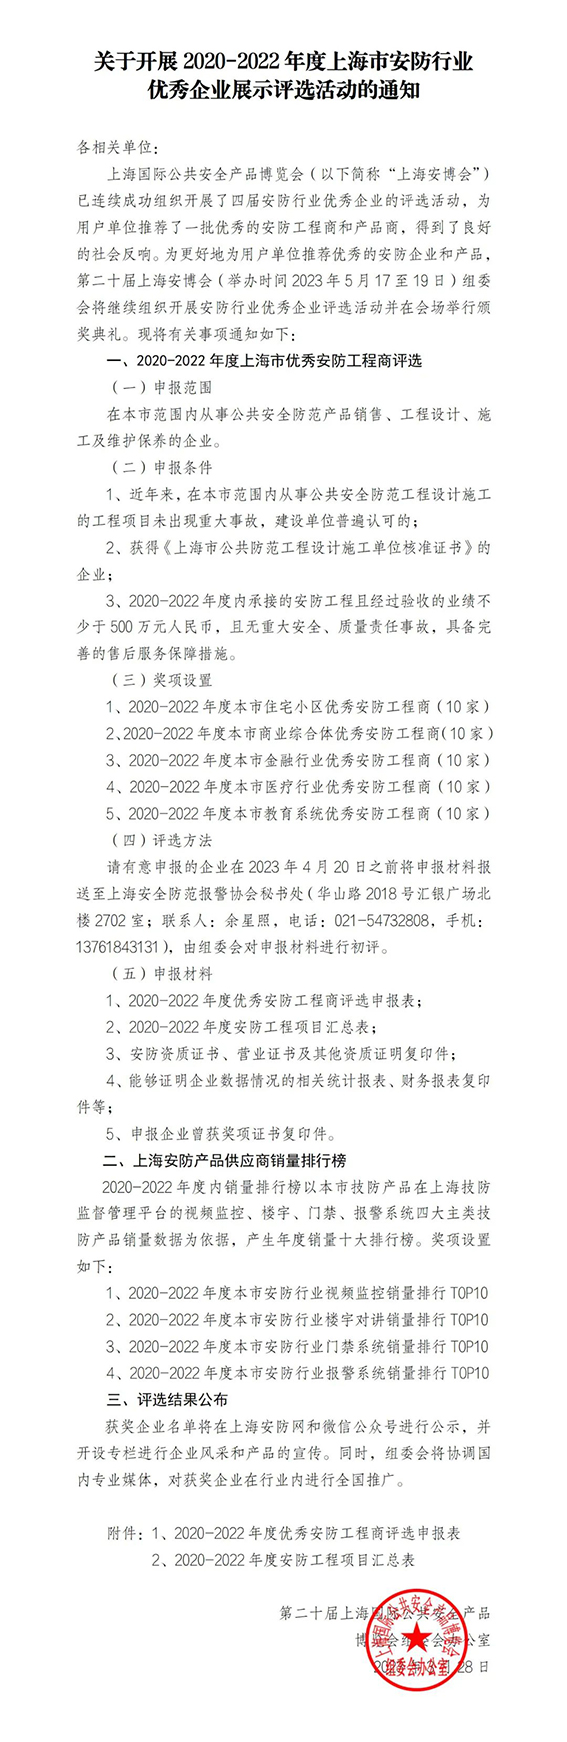 金牌娱乐app_金牌娱乐注册-官网开展2020-2022年度上海市安防行业优秀企业展示评选活动的通知w.jpg